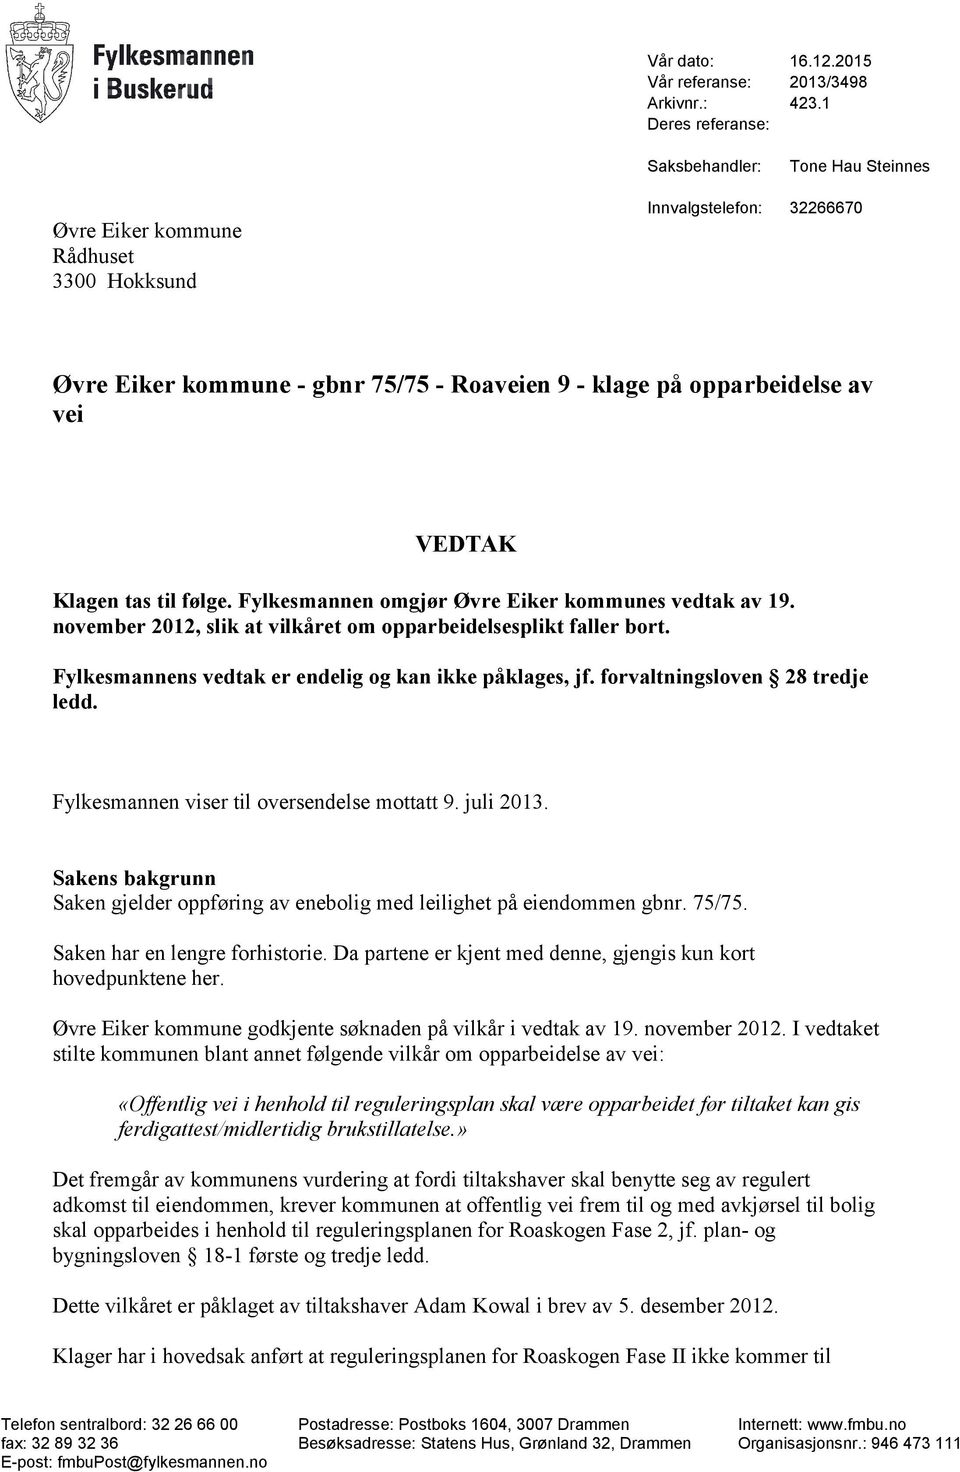 VEDTAK Klagen tas til følge. Fylkesmannen omgjør Øvre Eiker kommunes vedtak av 19. november 2012, slik at vilkåret om opparbeidelsesplikt faller bort.